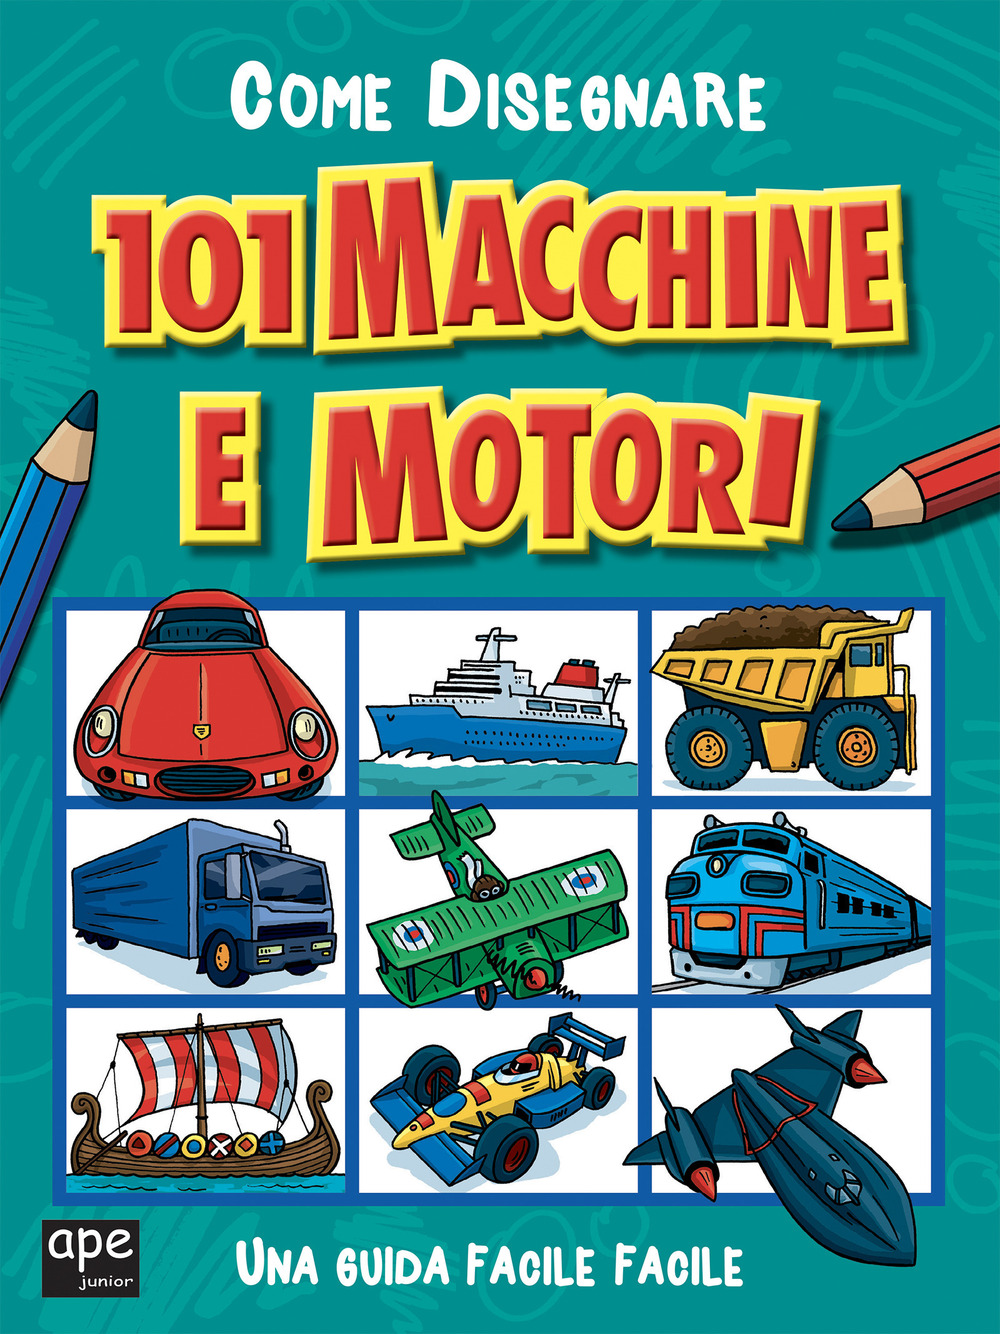 Come disegnare 101 macchine e motori. Ediz. illustrata